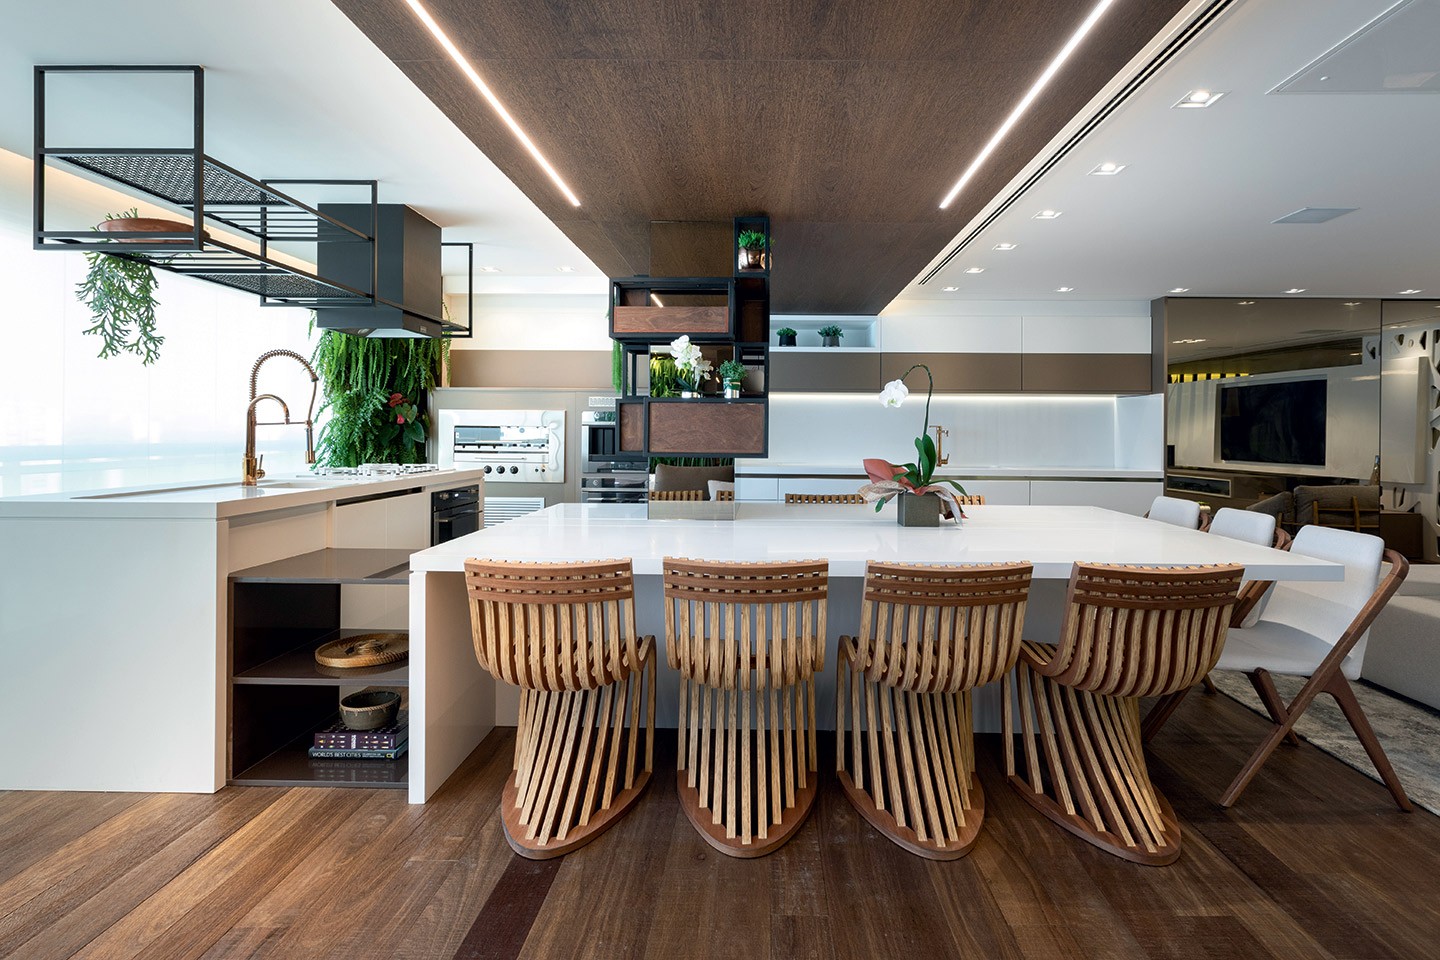 Apartamento de 200 m² tem living espaçoso e muita madeira (Foto: Vilhora/divulgação)